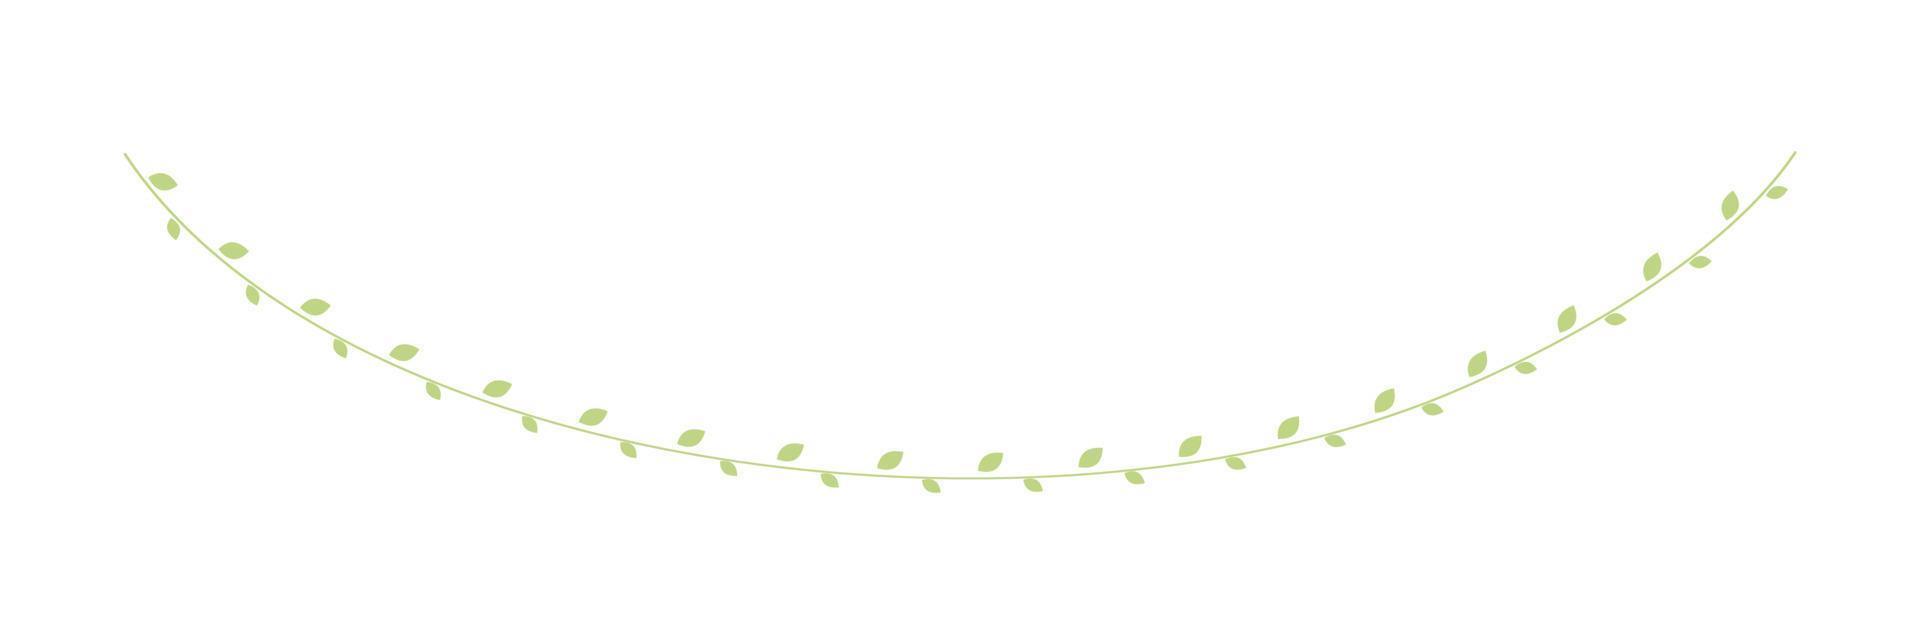 vert pendaison vigne guirlande vecteur illustration. Facile minimal floral botanique vigne rideau conception éléments pour printemps.